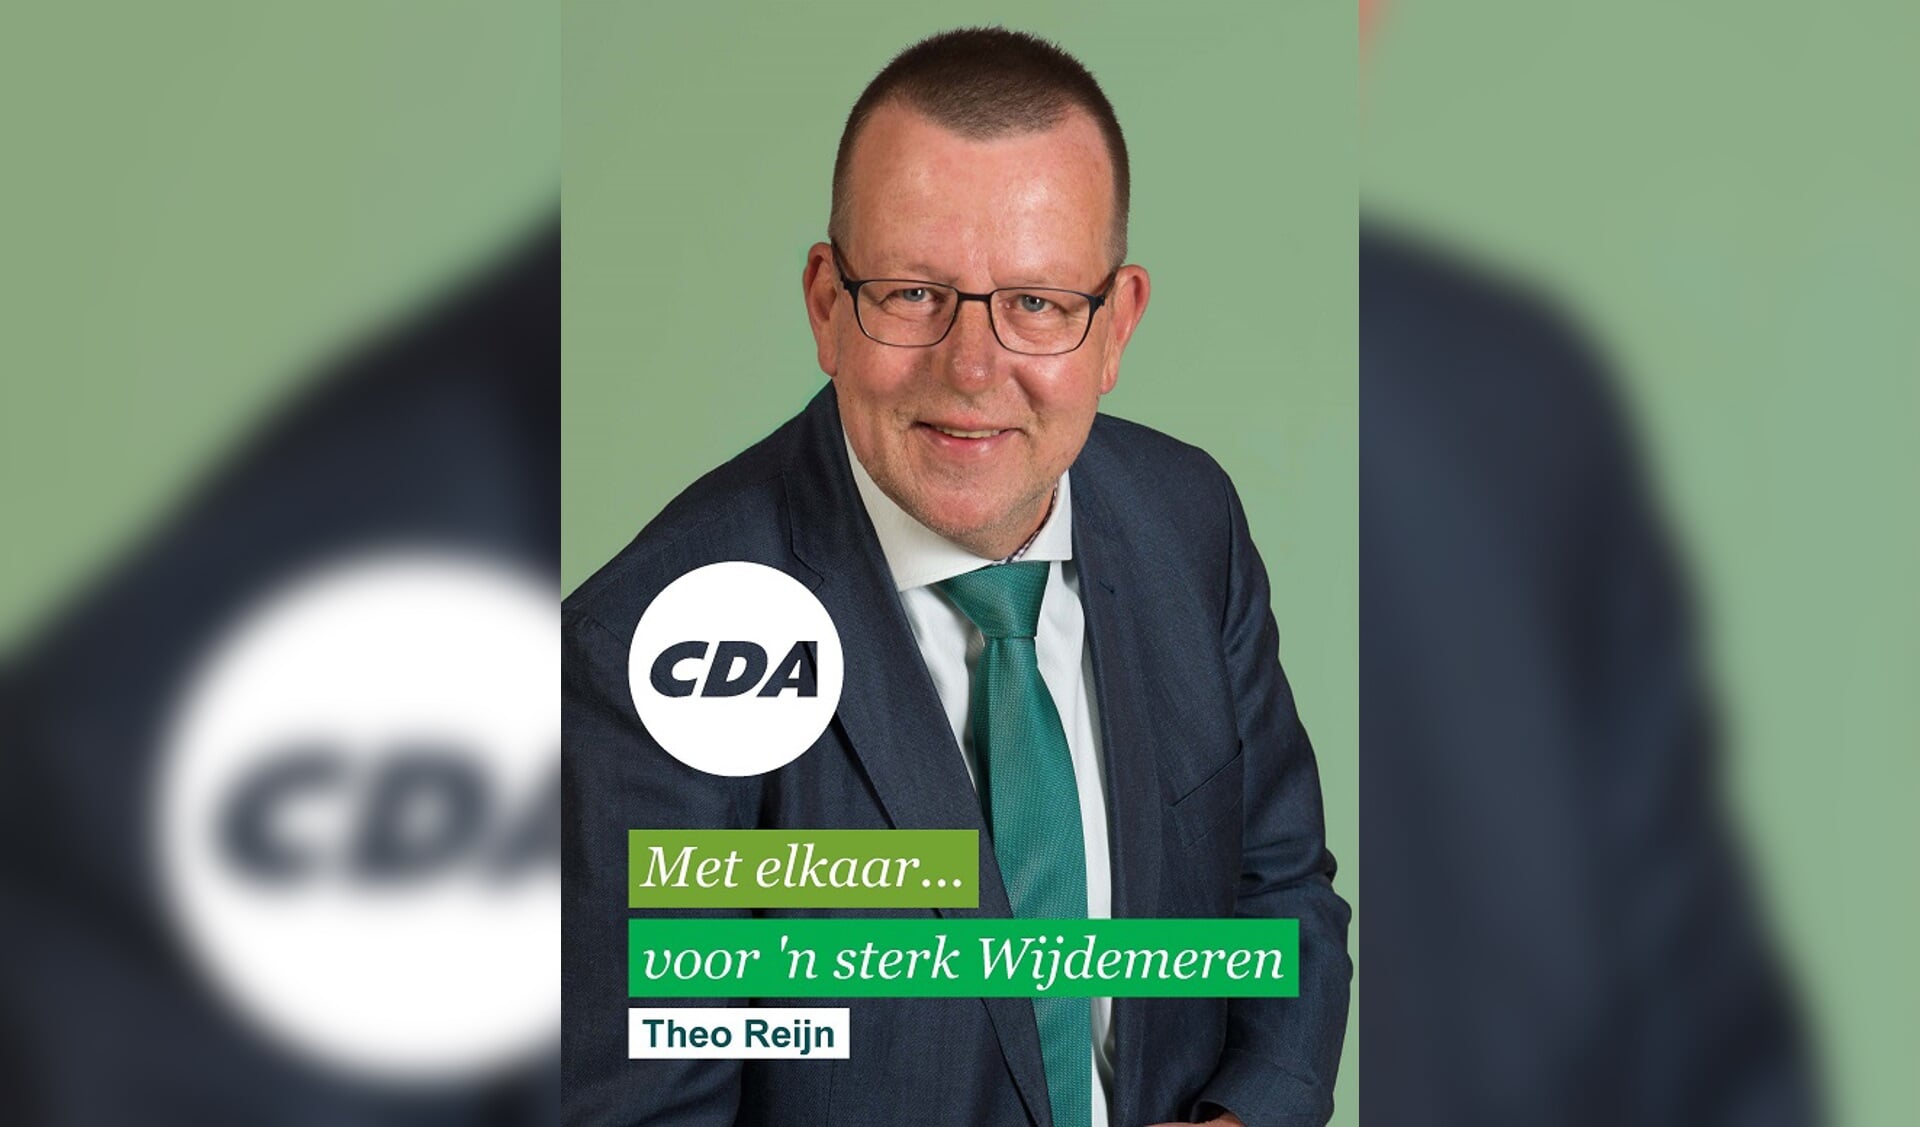 Theo Reijn, CDA-fractievoorzitter Wijdemeren